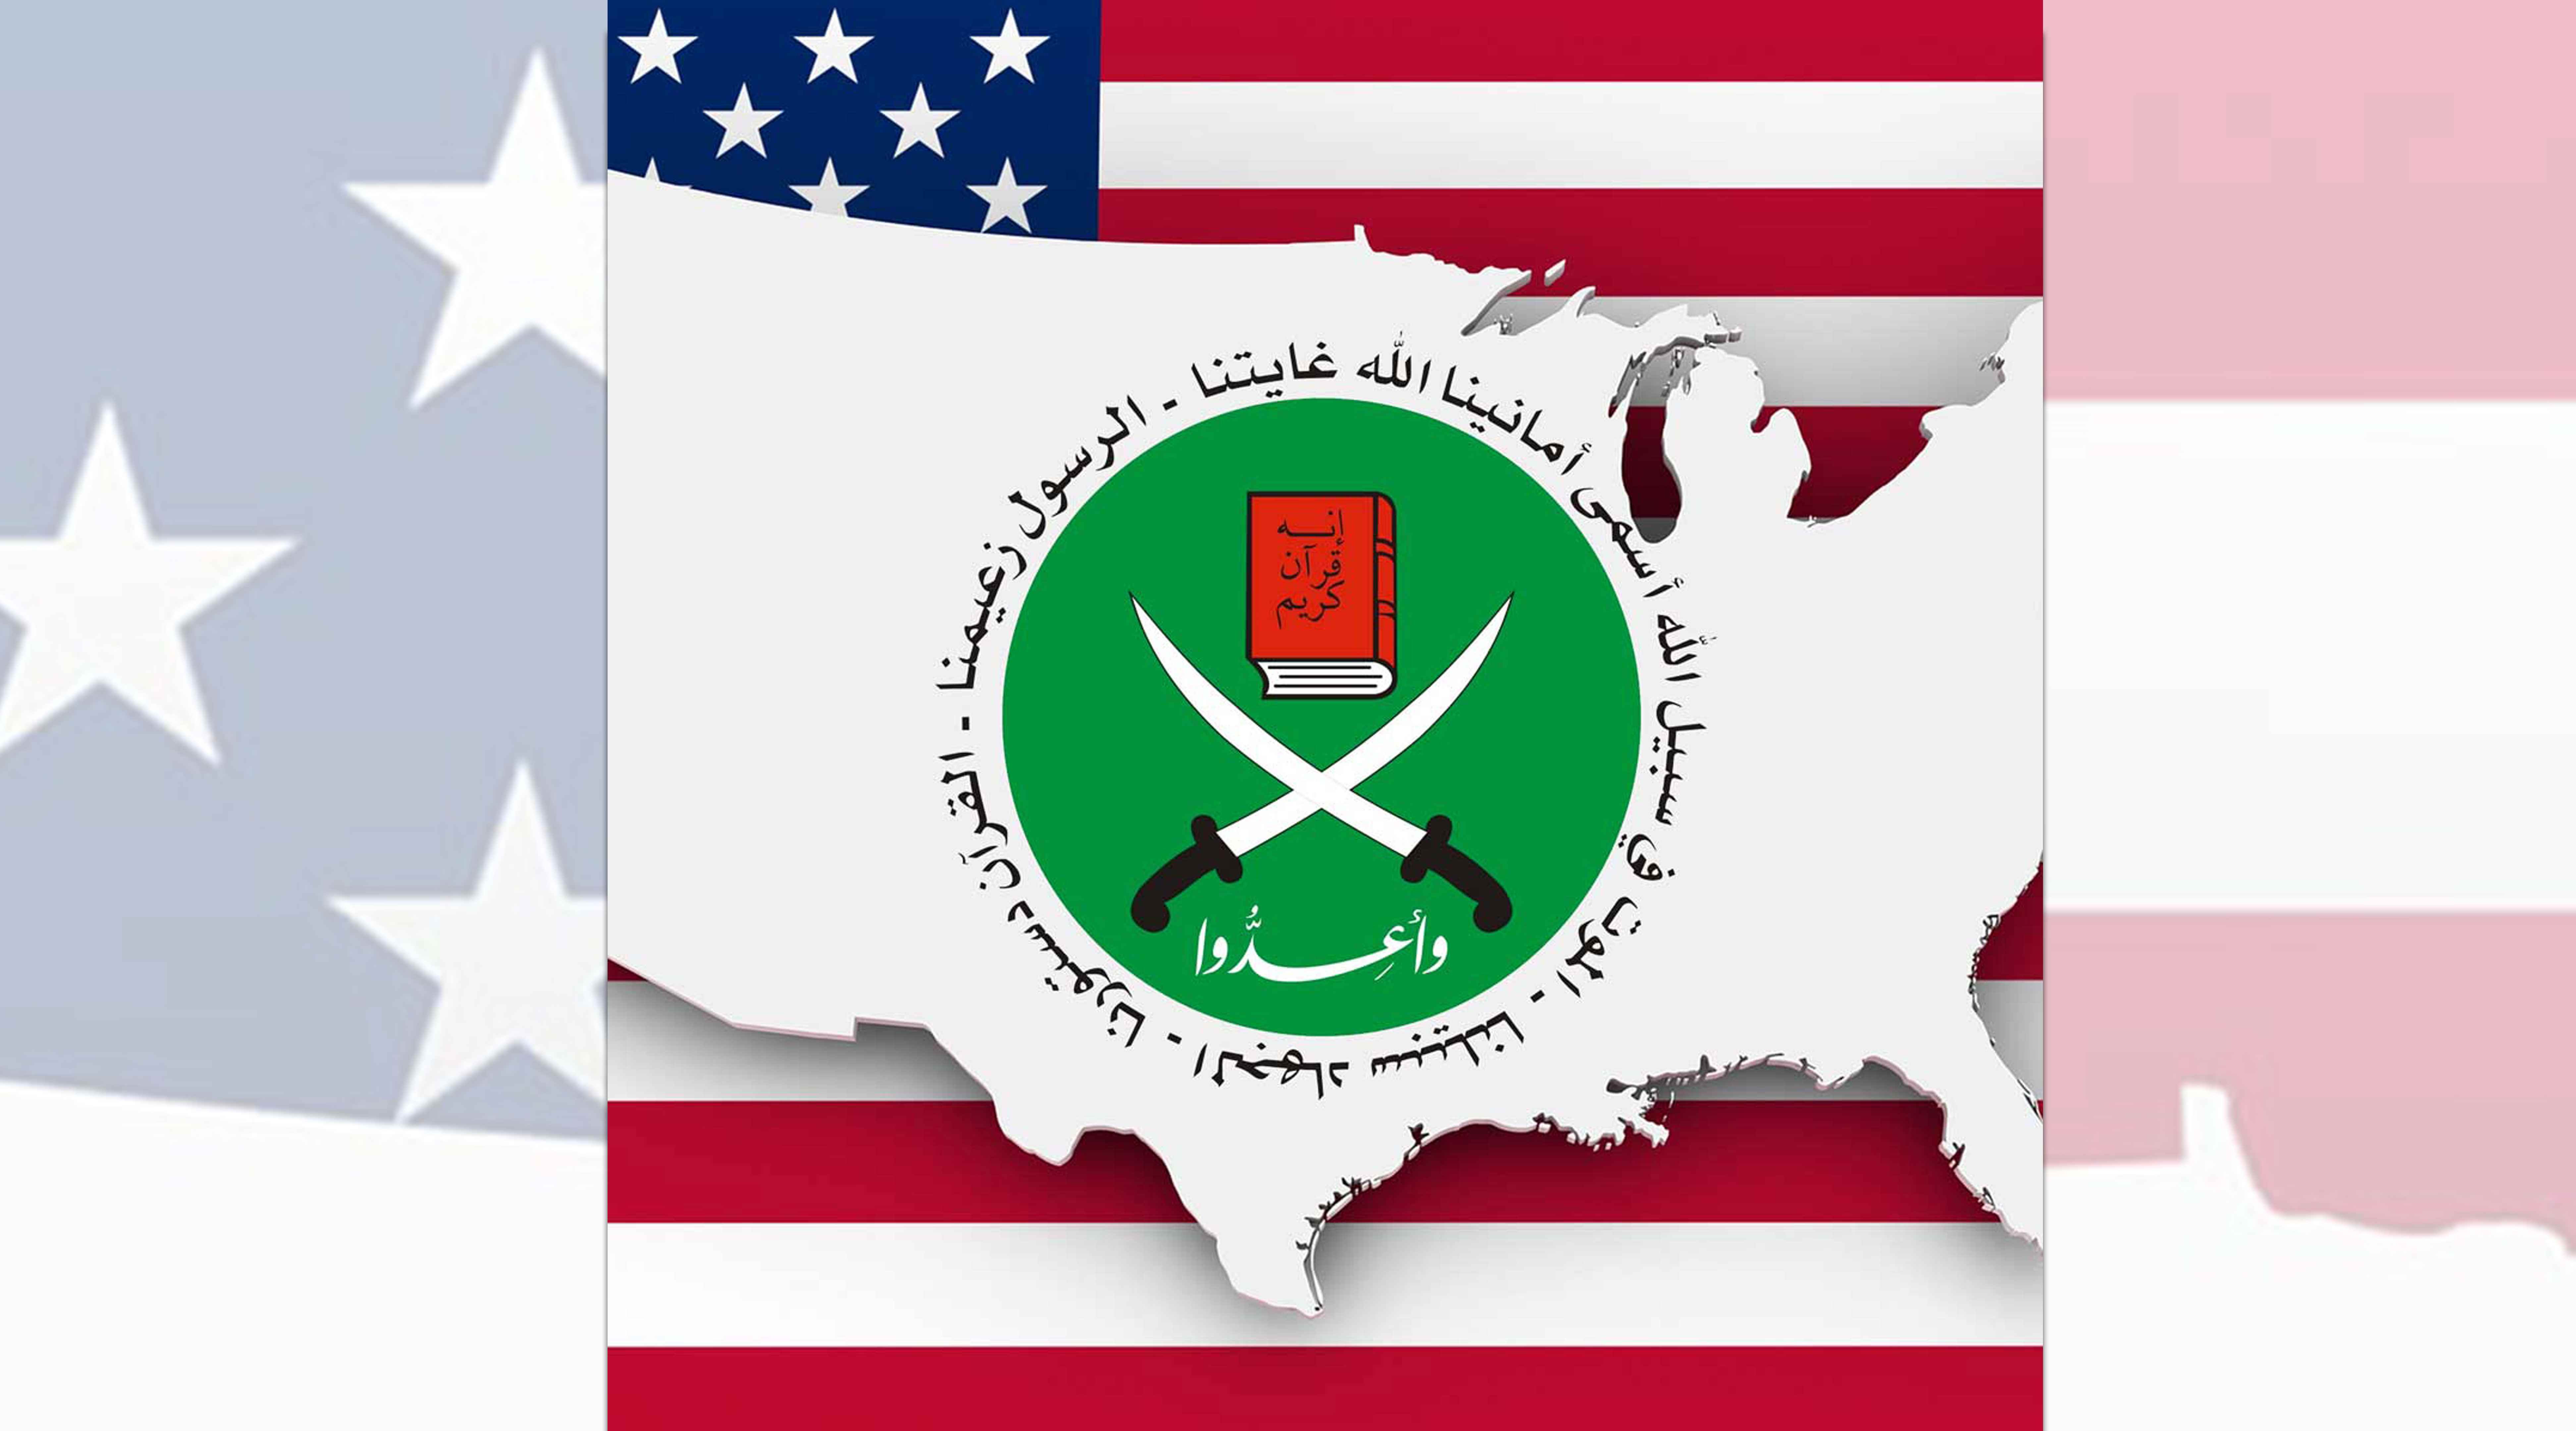 التهديد من الداخل:  استراتيجية “الإخوان المسلمين” لاختراق المجتمع الأمريكي